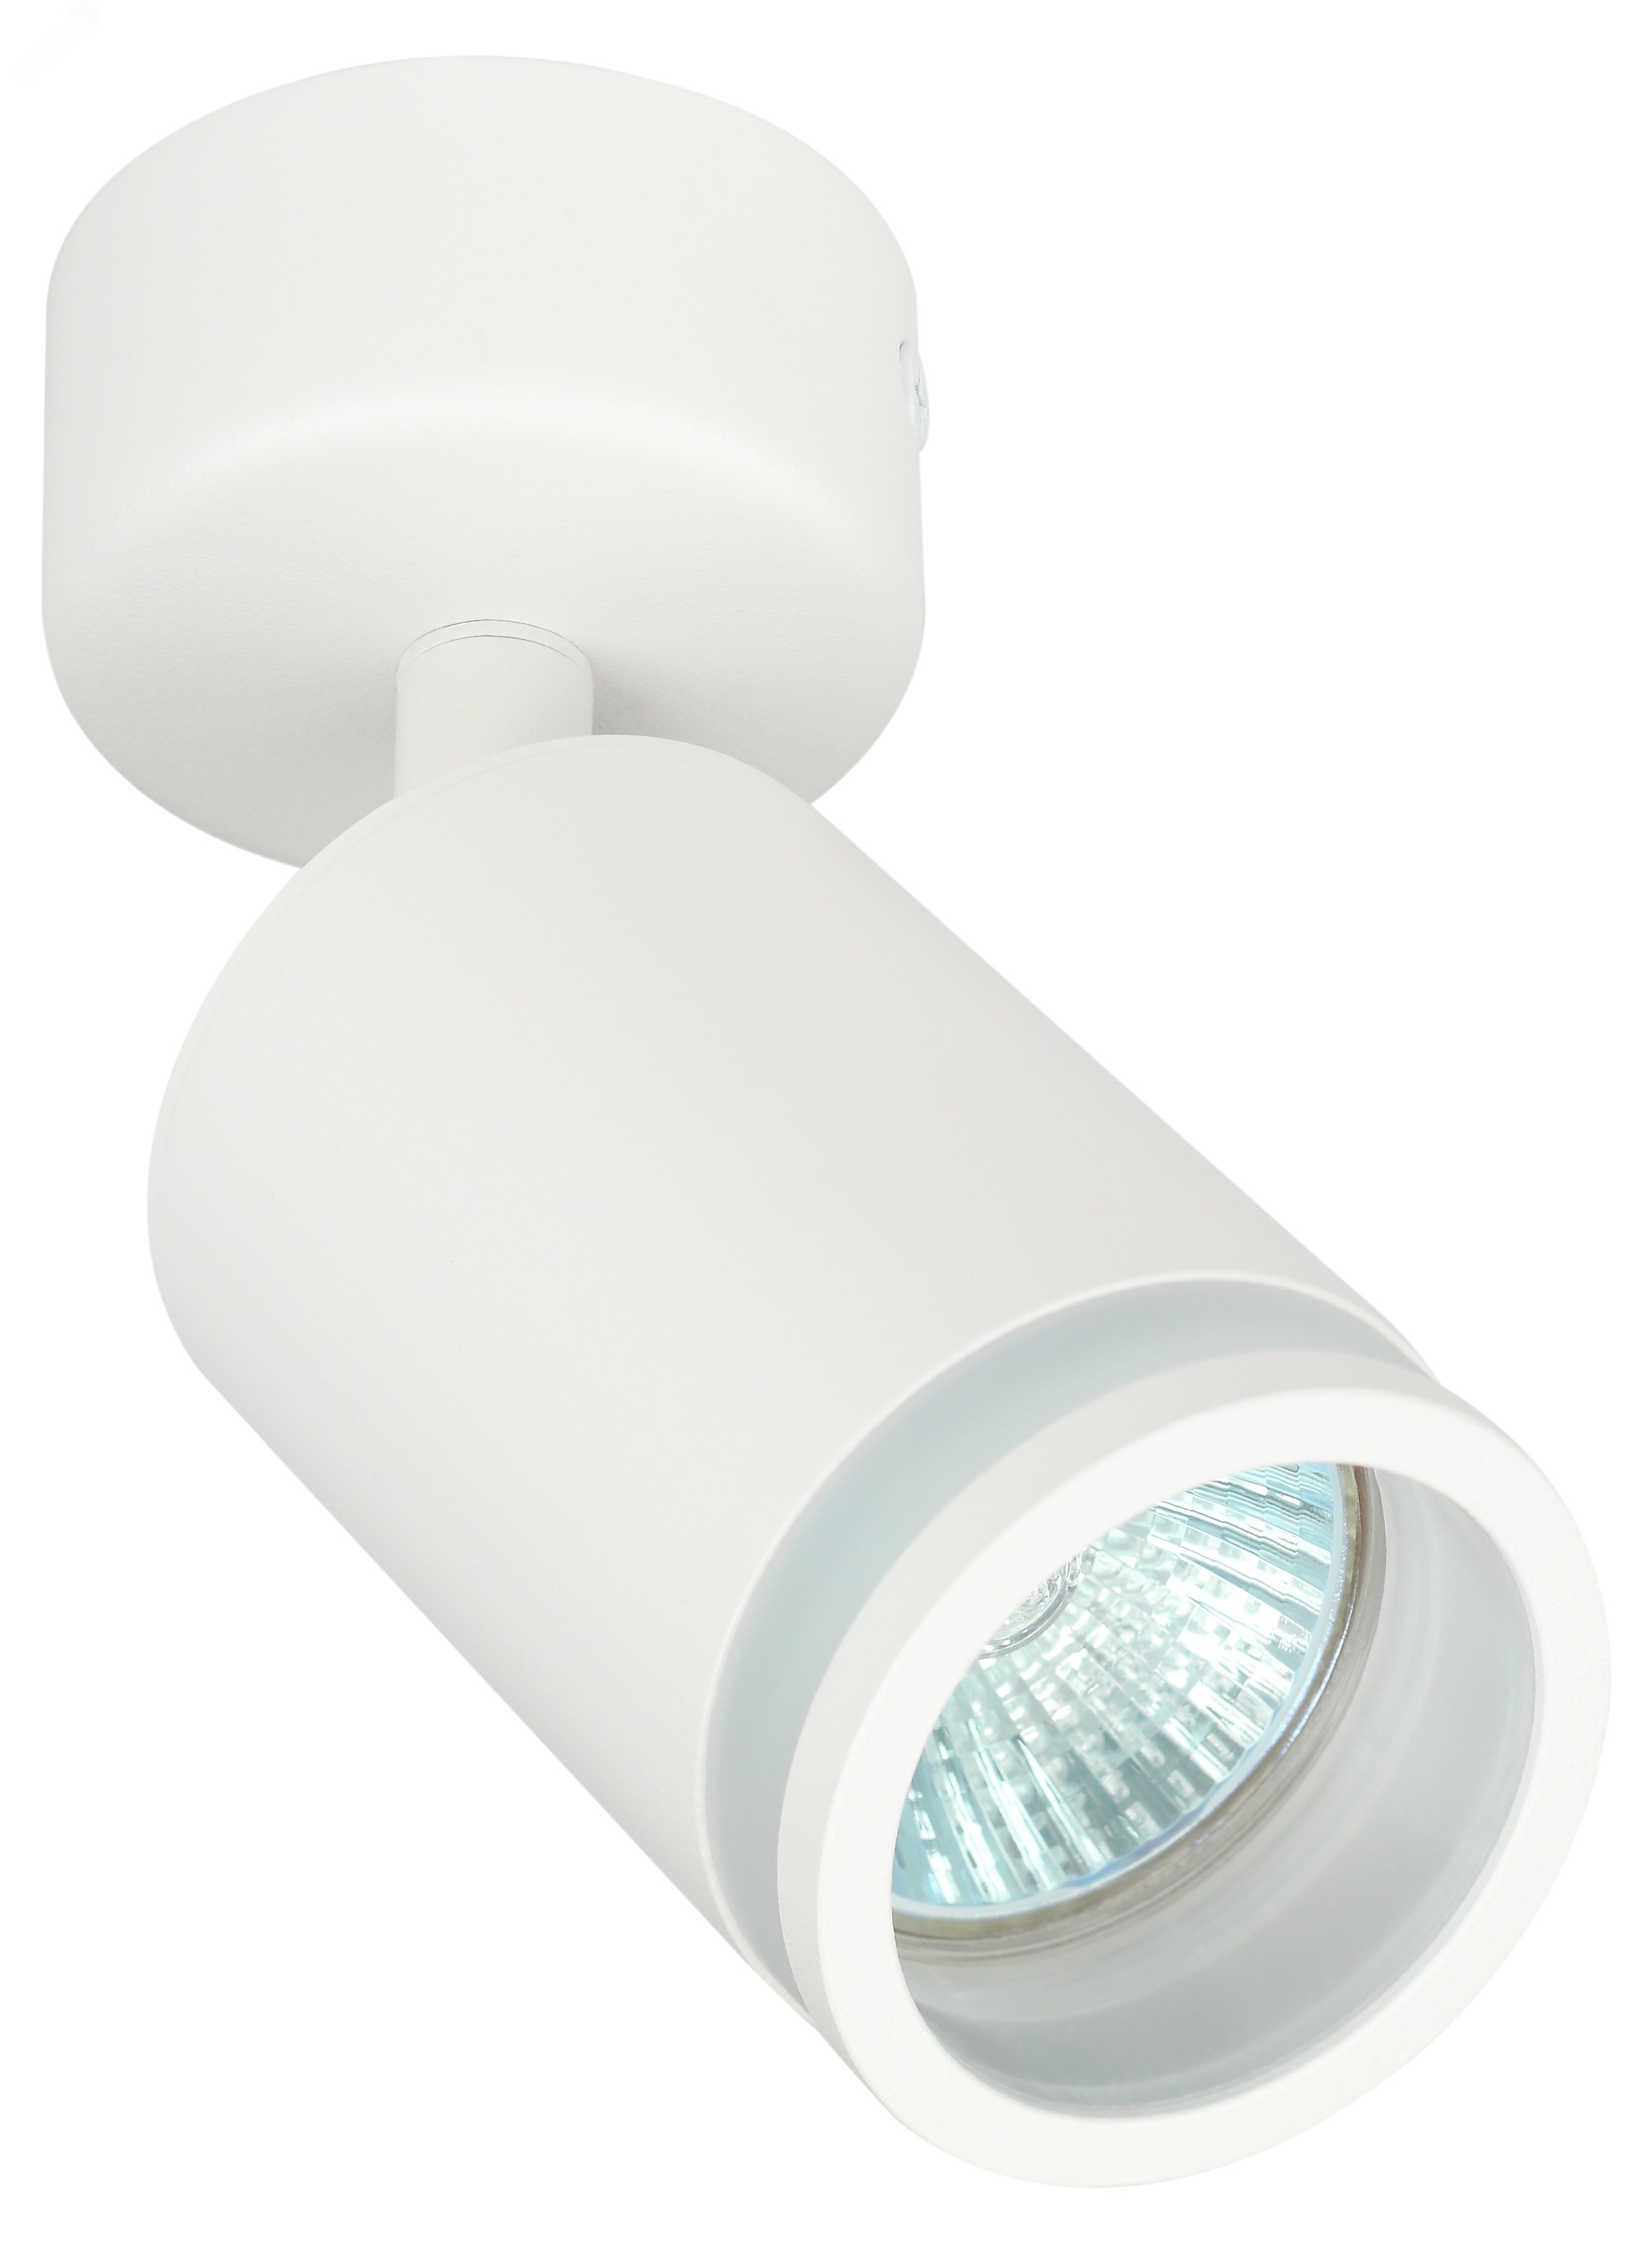 Светильник настенно-потолочный спот OL23 WH MR16/GU10, белый лампа MR16 ( в комплект не входит) Б0054396 ЭРА